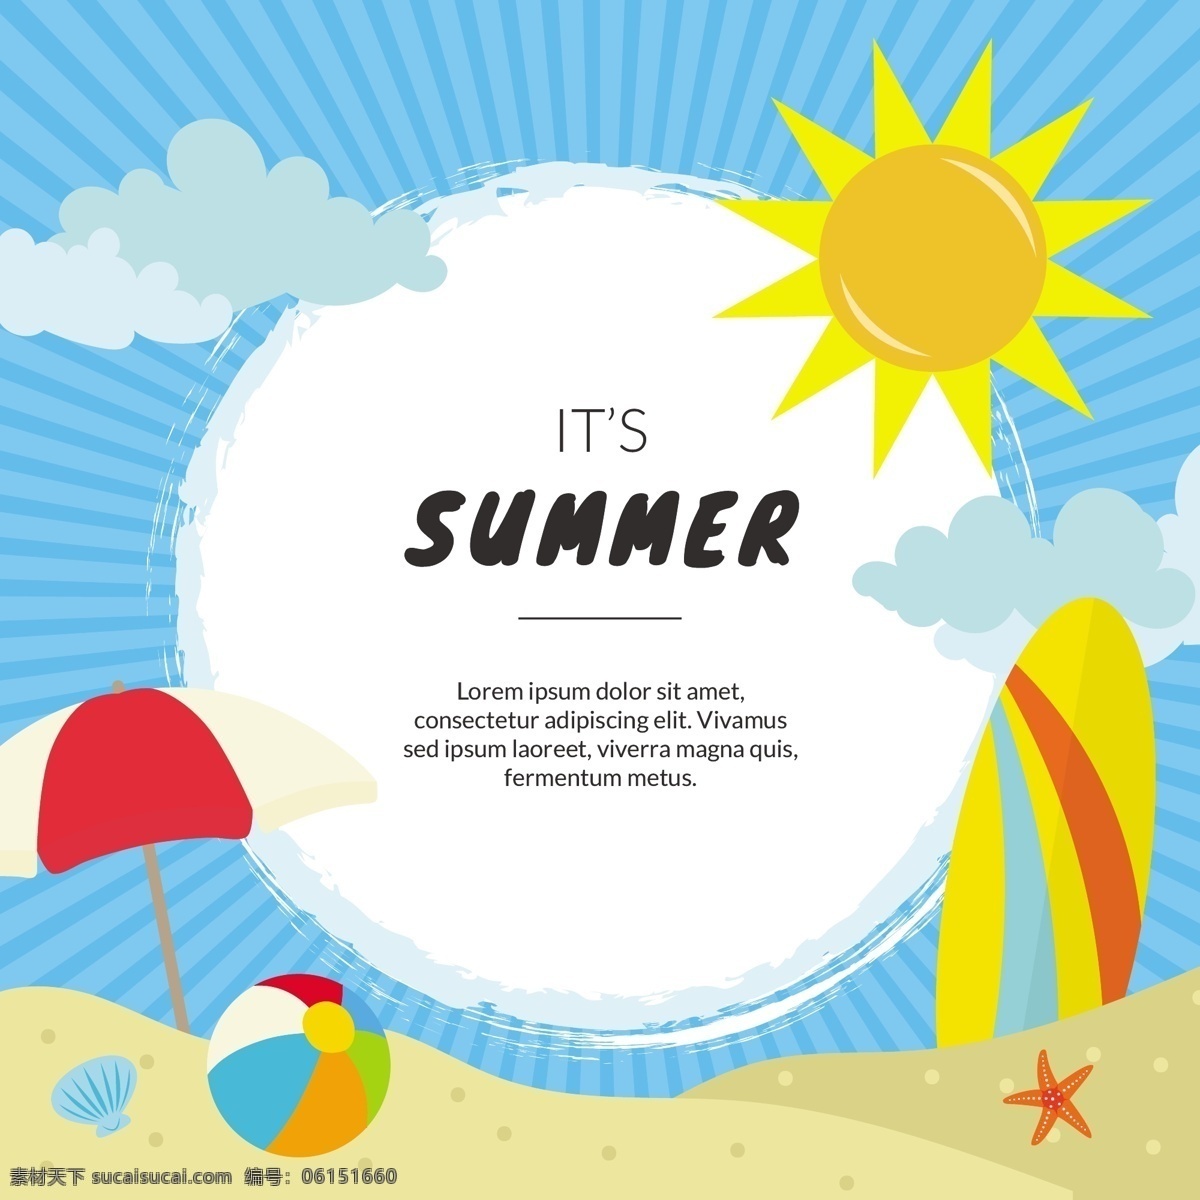 夏日沙滩背景 背景 框架 海报 边界 模板 夏季 卡通 海洋 海滩 阳光 壁纸 假日 板 条纹 伞 冲浪 乐趣 闪耀 假期